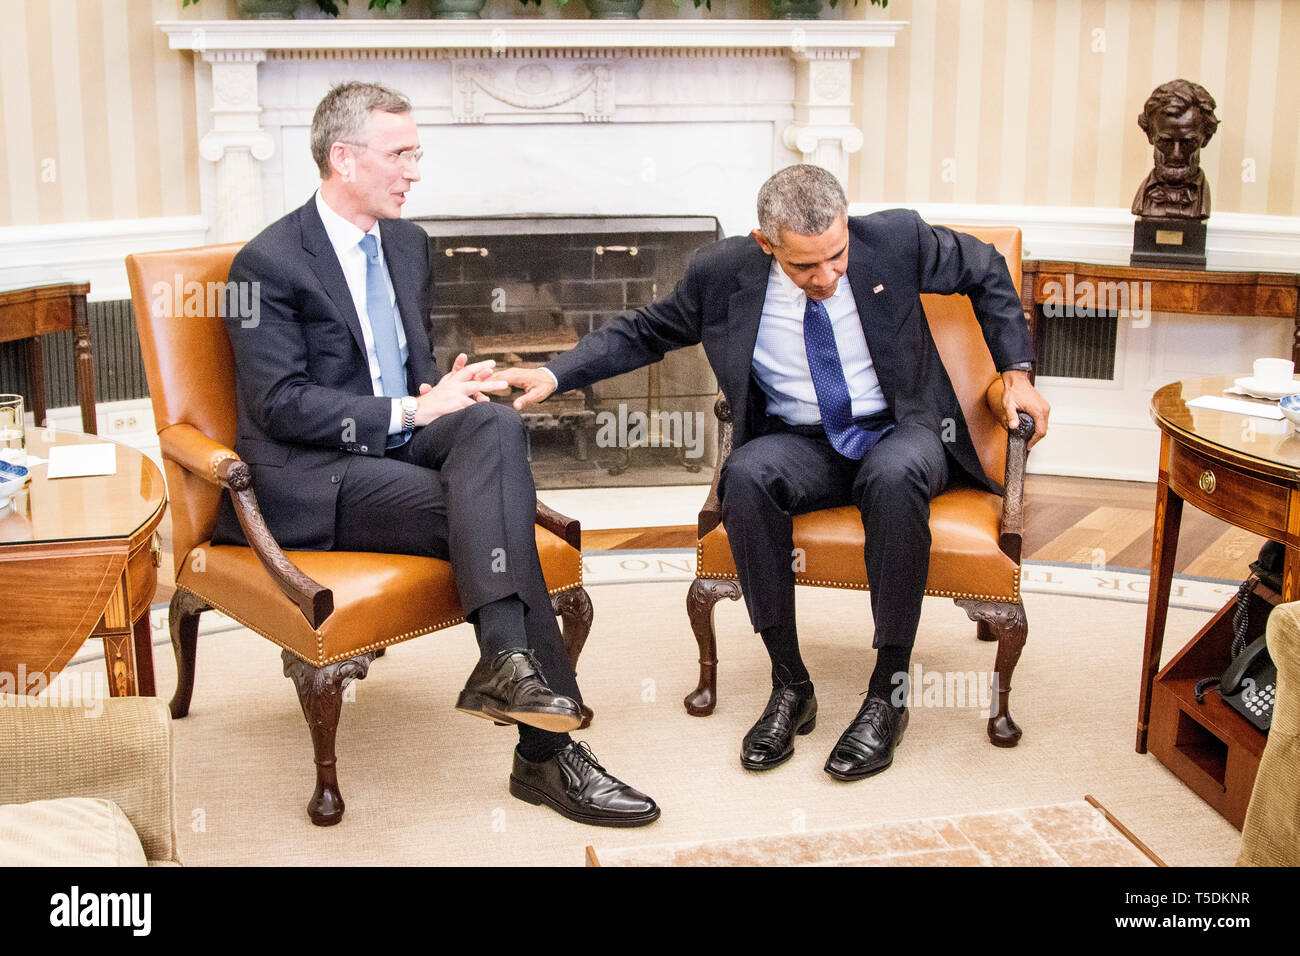 Secretario General de la OTAN, el Sr. Jens Stoltenberg, visita la Casa Blanca y el presidente estadounidense Barack Obama. Foto de stock